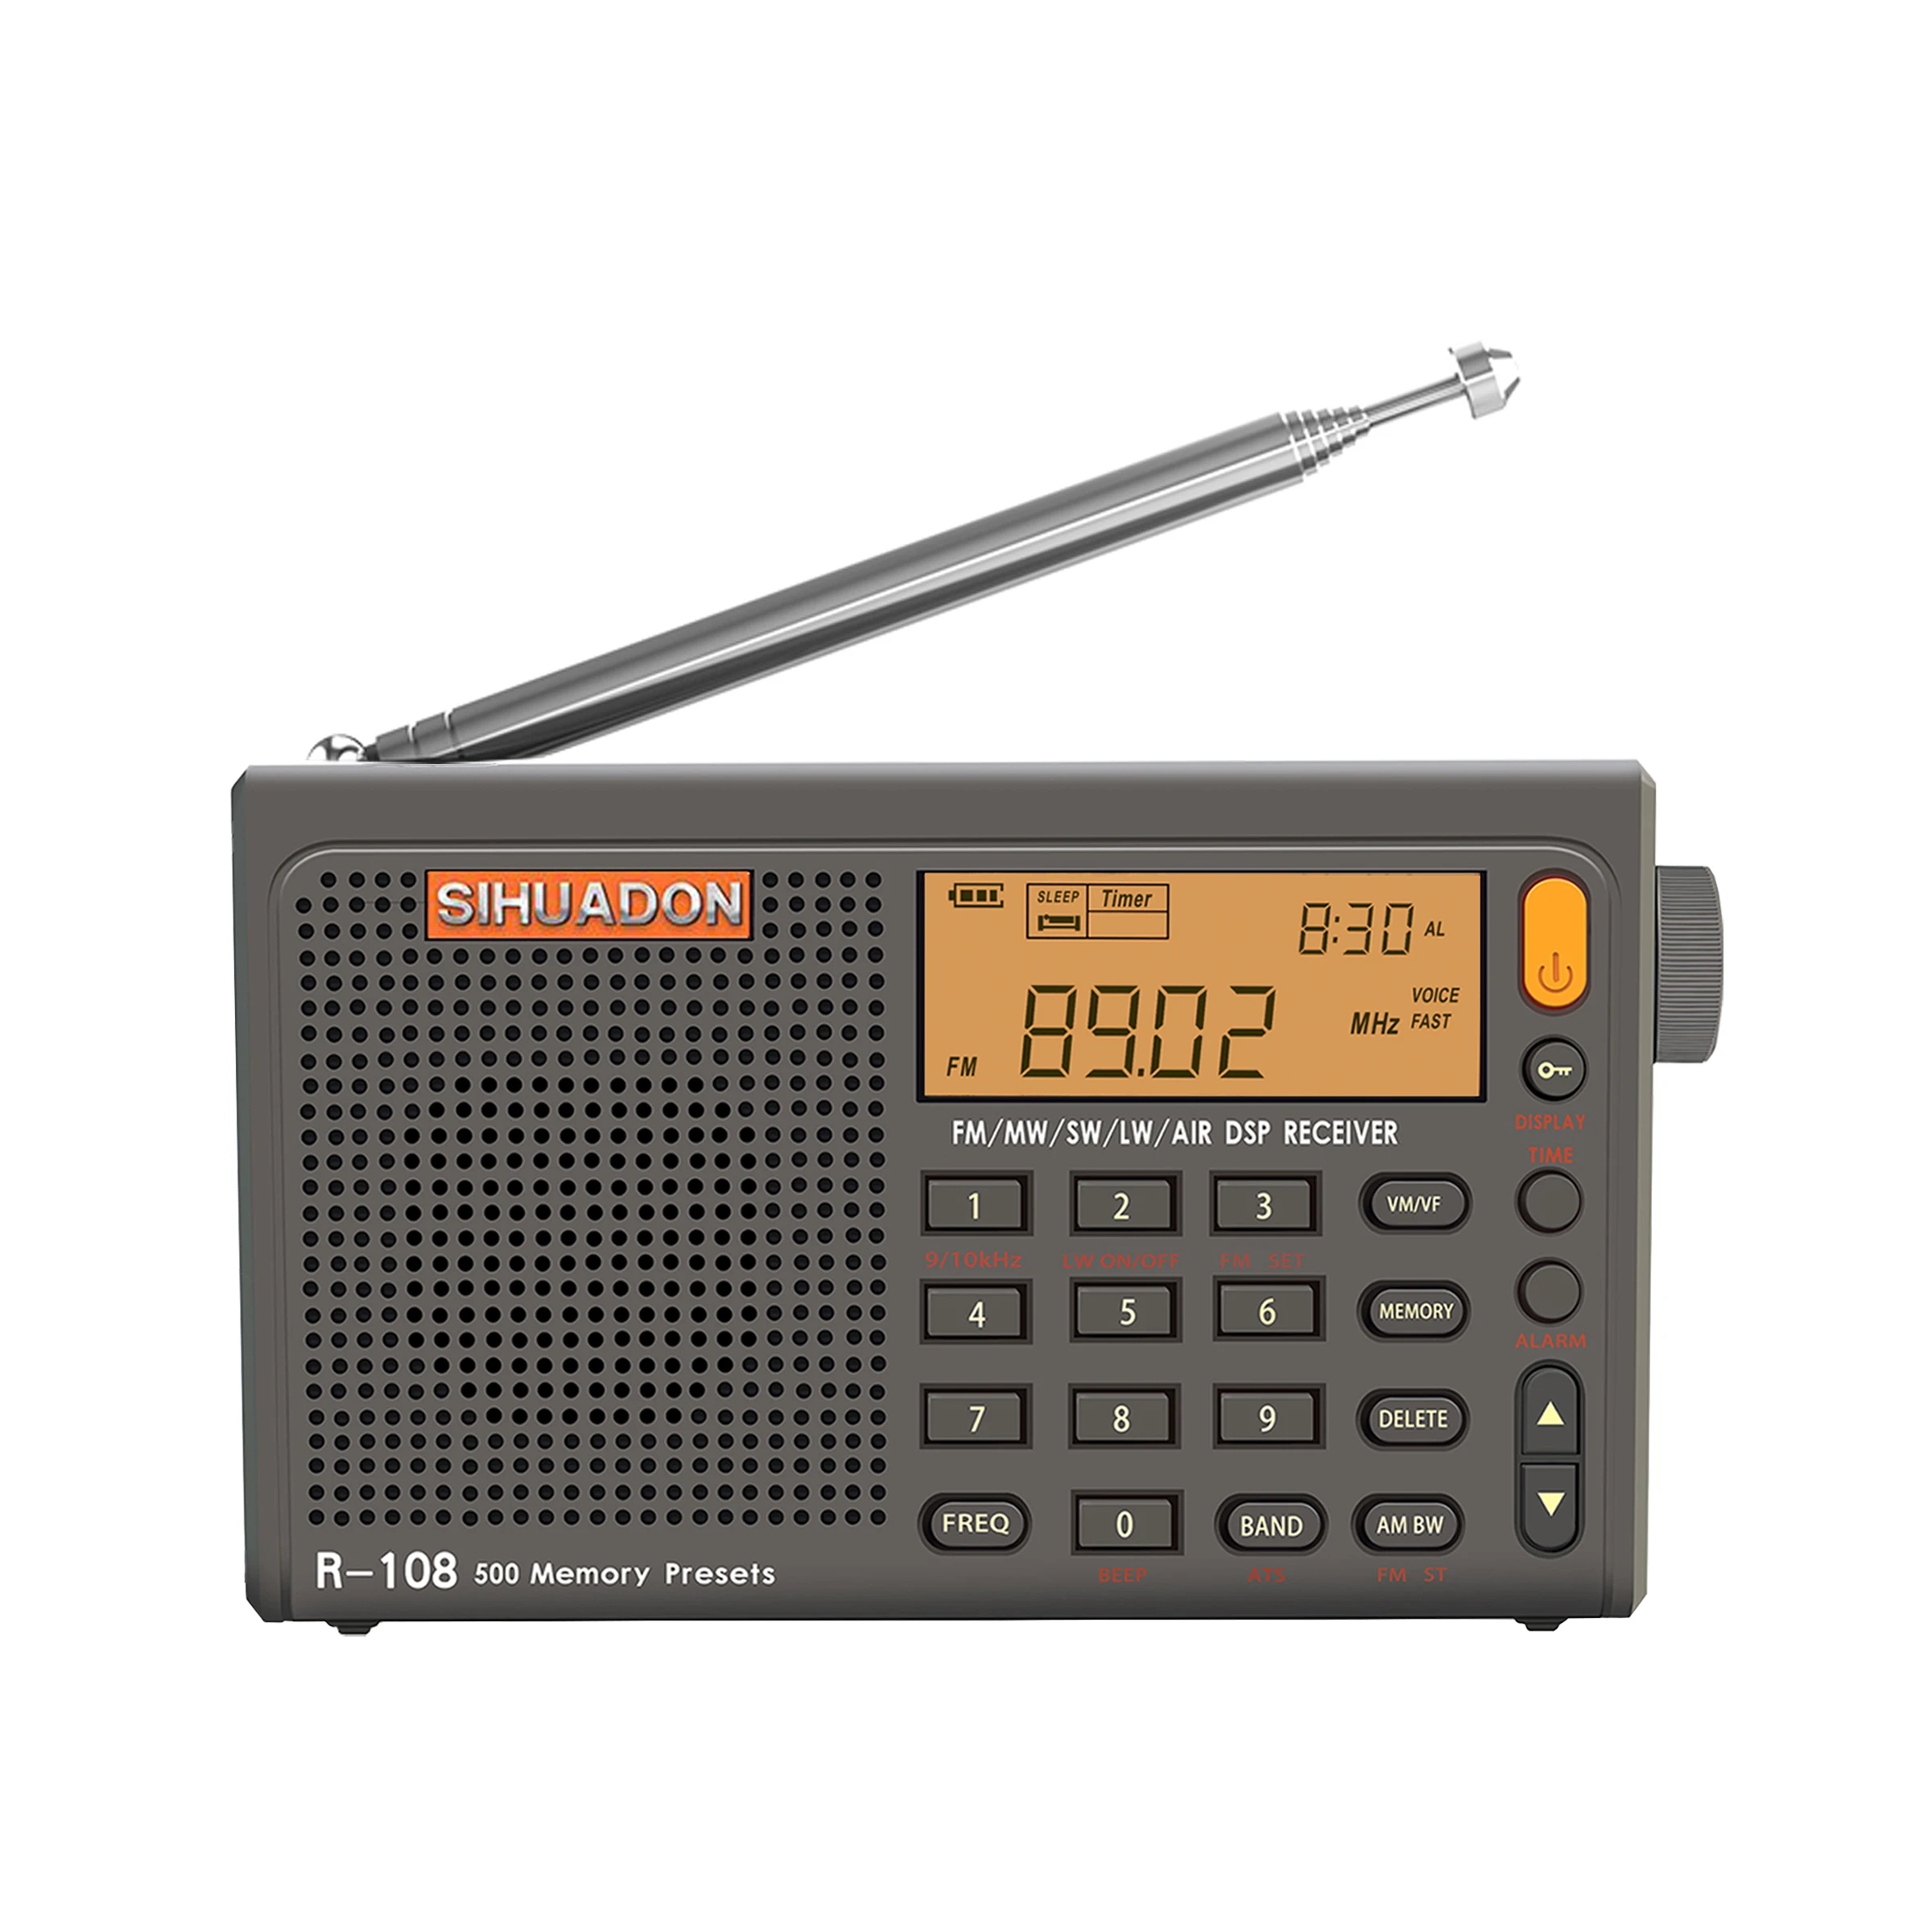 SIHUADON R-108 Radio FM Stereo Digital P…